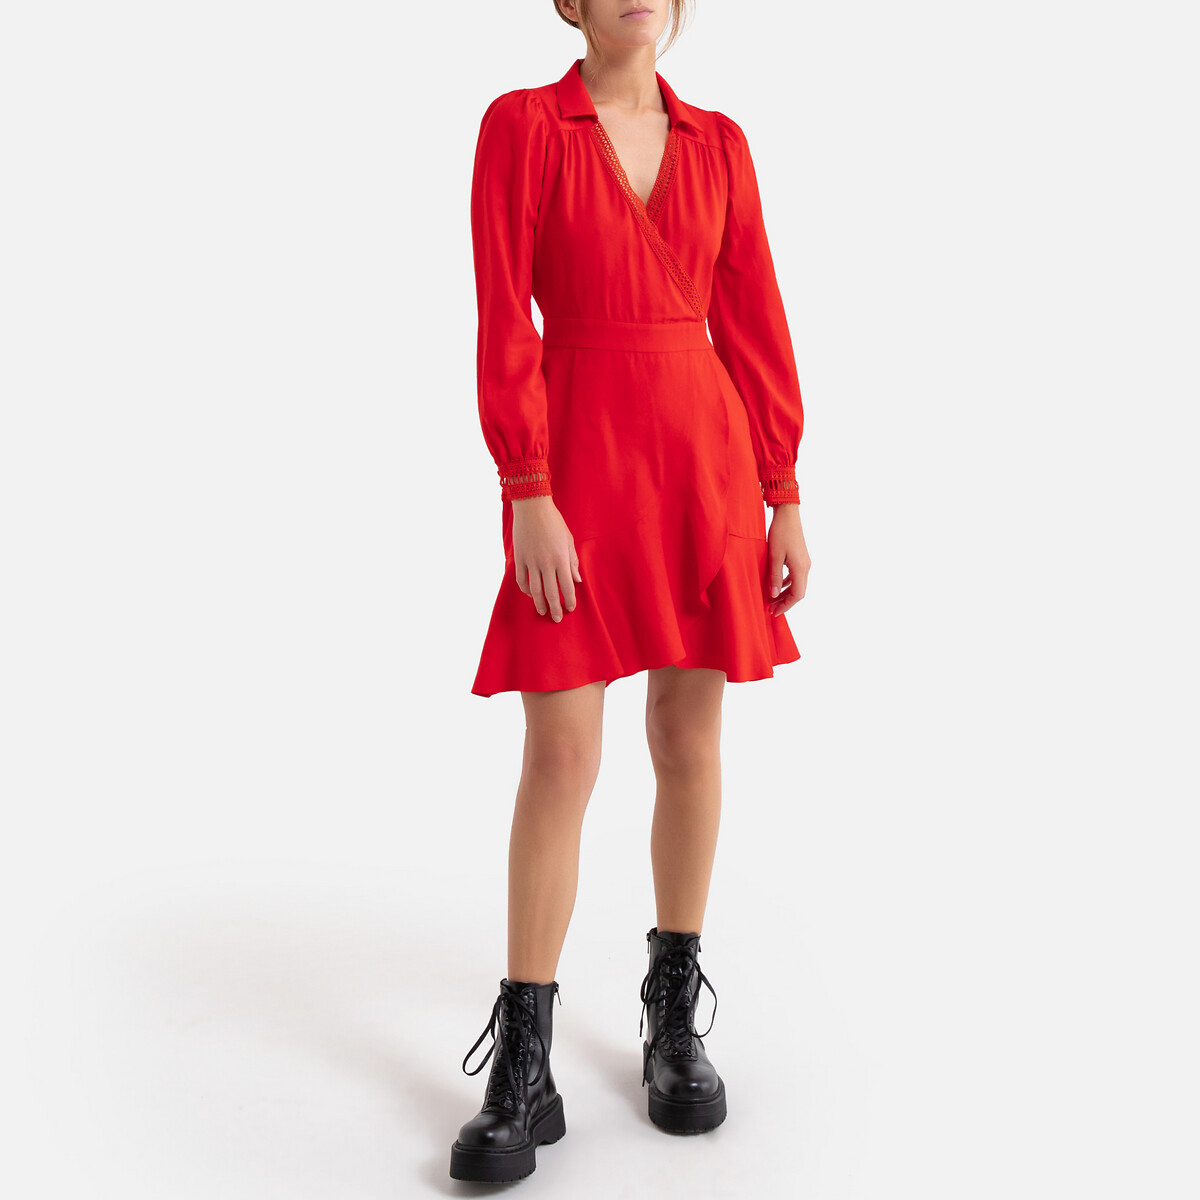 Платье La Redoute Короткое с V-образным декольте длинные рукава 3(L) красный, размер 3(L) Короткое с V-образным декольте длинные рукава 3(L) красный - фото 2